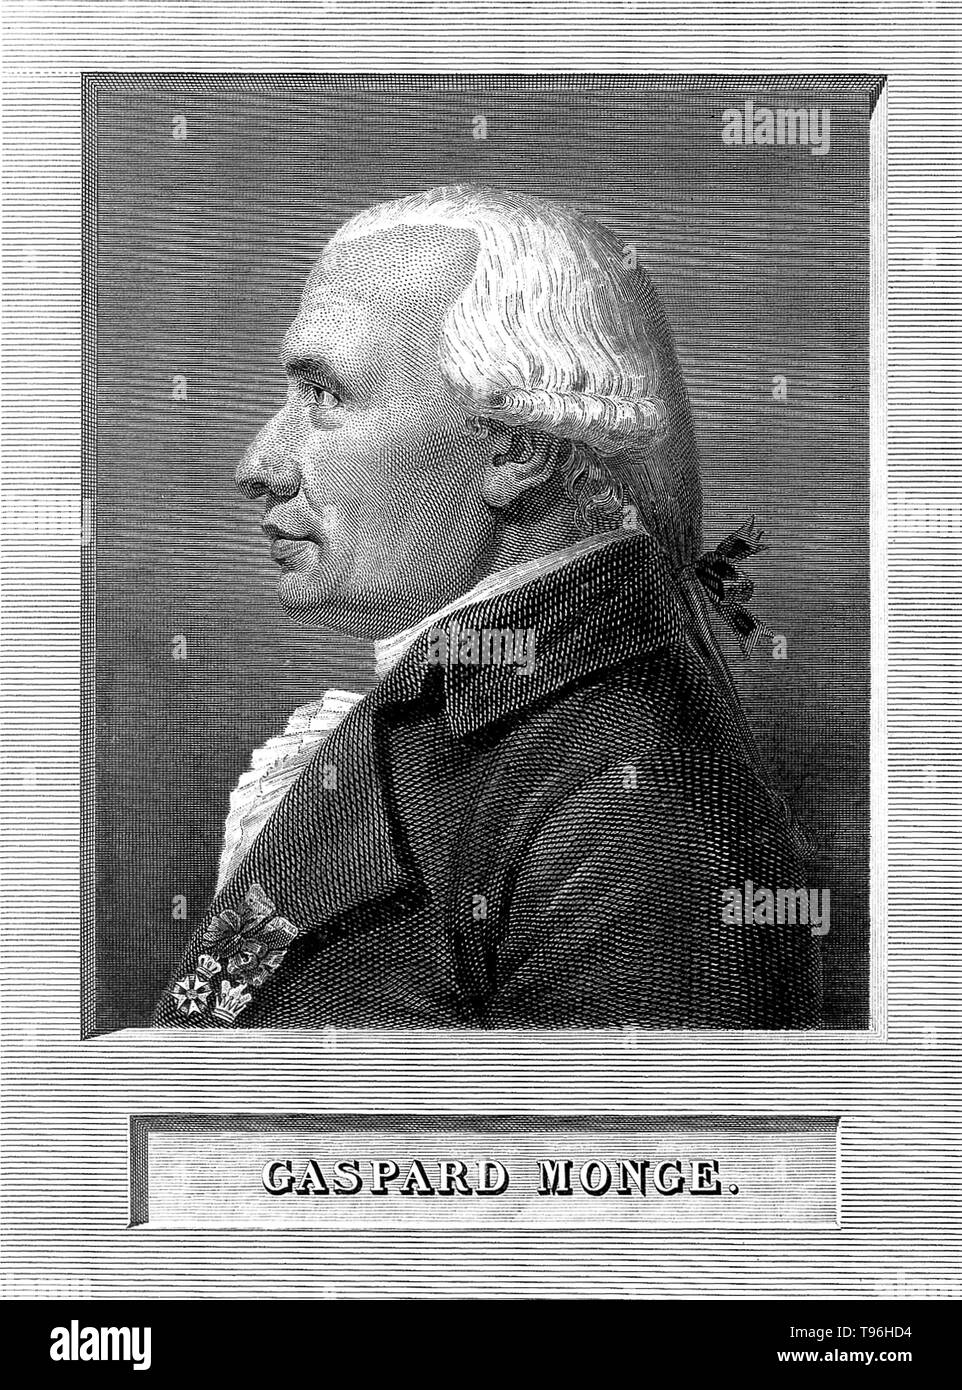 Gaspard Monge, Comte de Péluse (9 maggio 1746 - 28 luglio 1818) era un matematico francese e l'inventore della geometria descrittiva. Dopo un anno presso la École Royale è stato chiesto di produrre un piano per una fortificazione in modo tale da ottimizzare la sua disposizione difensiva. Vi è stato un metodo stabilito per questa operazione, ma egli ha ideato un modo di risolvere i problemi utilizzando disegni. Il valore del lavoro è stata riconosciuta e la sua eccezionale abilità sono state riconosciute. Foto Stock